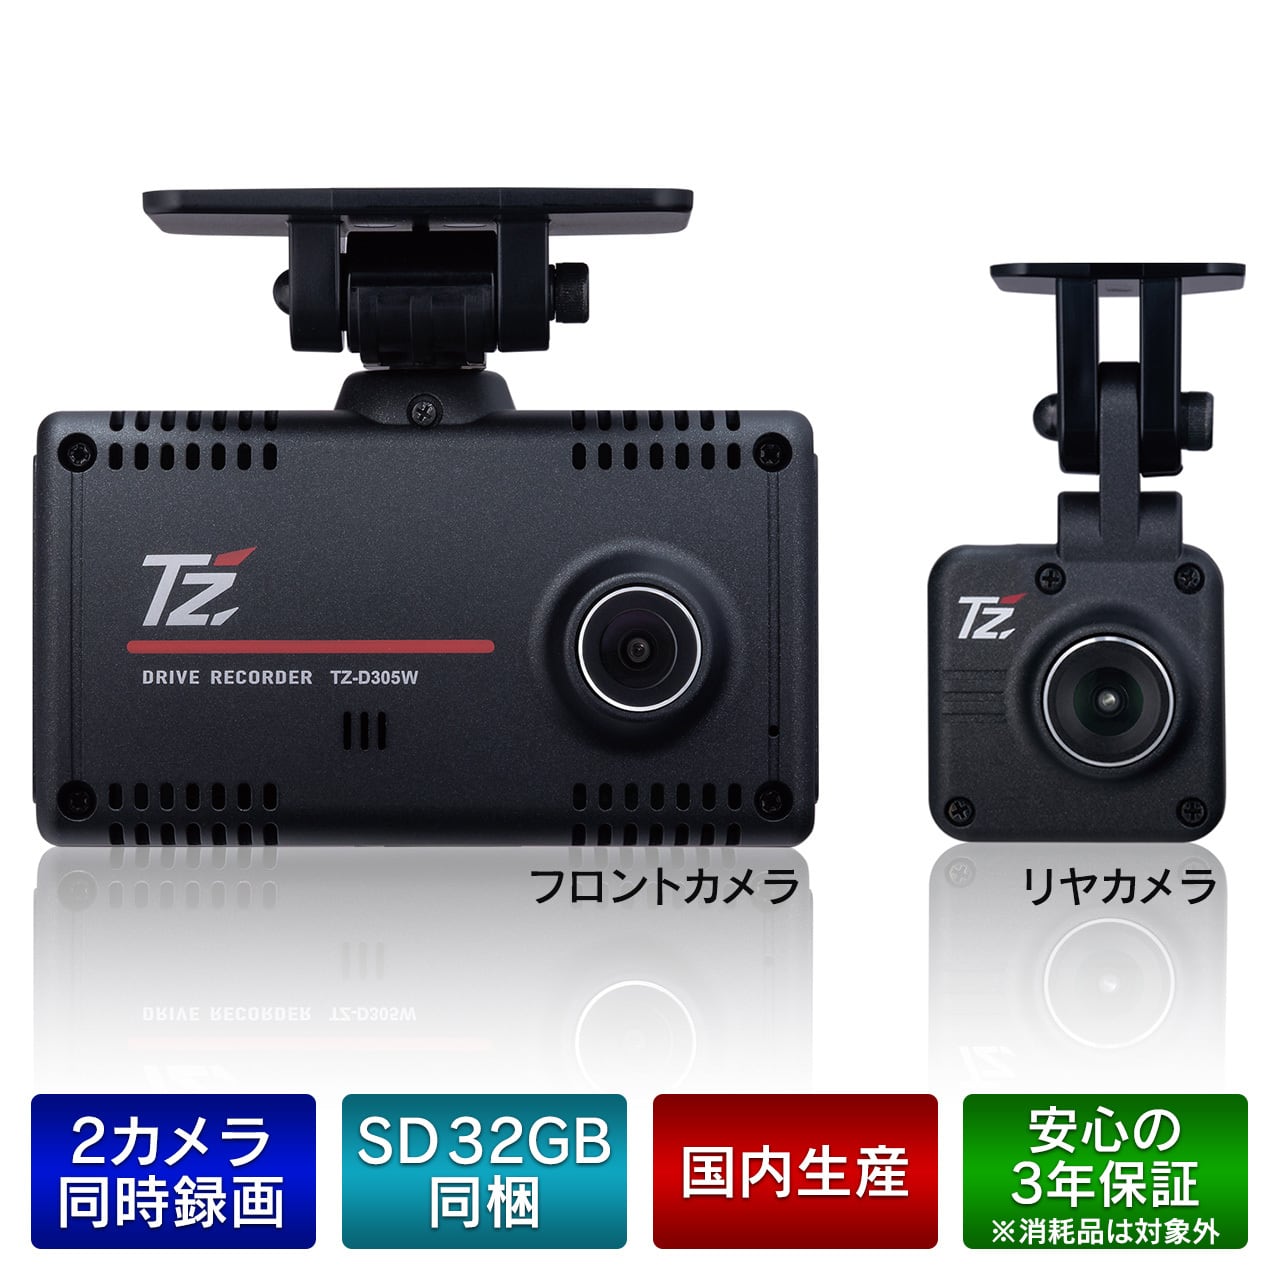 【TZ】2カメラ ドライブレコーダー TZ-D305W(V9TZDR211) | 滋賀のいちおし トト屋 powered by BASE